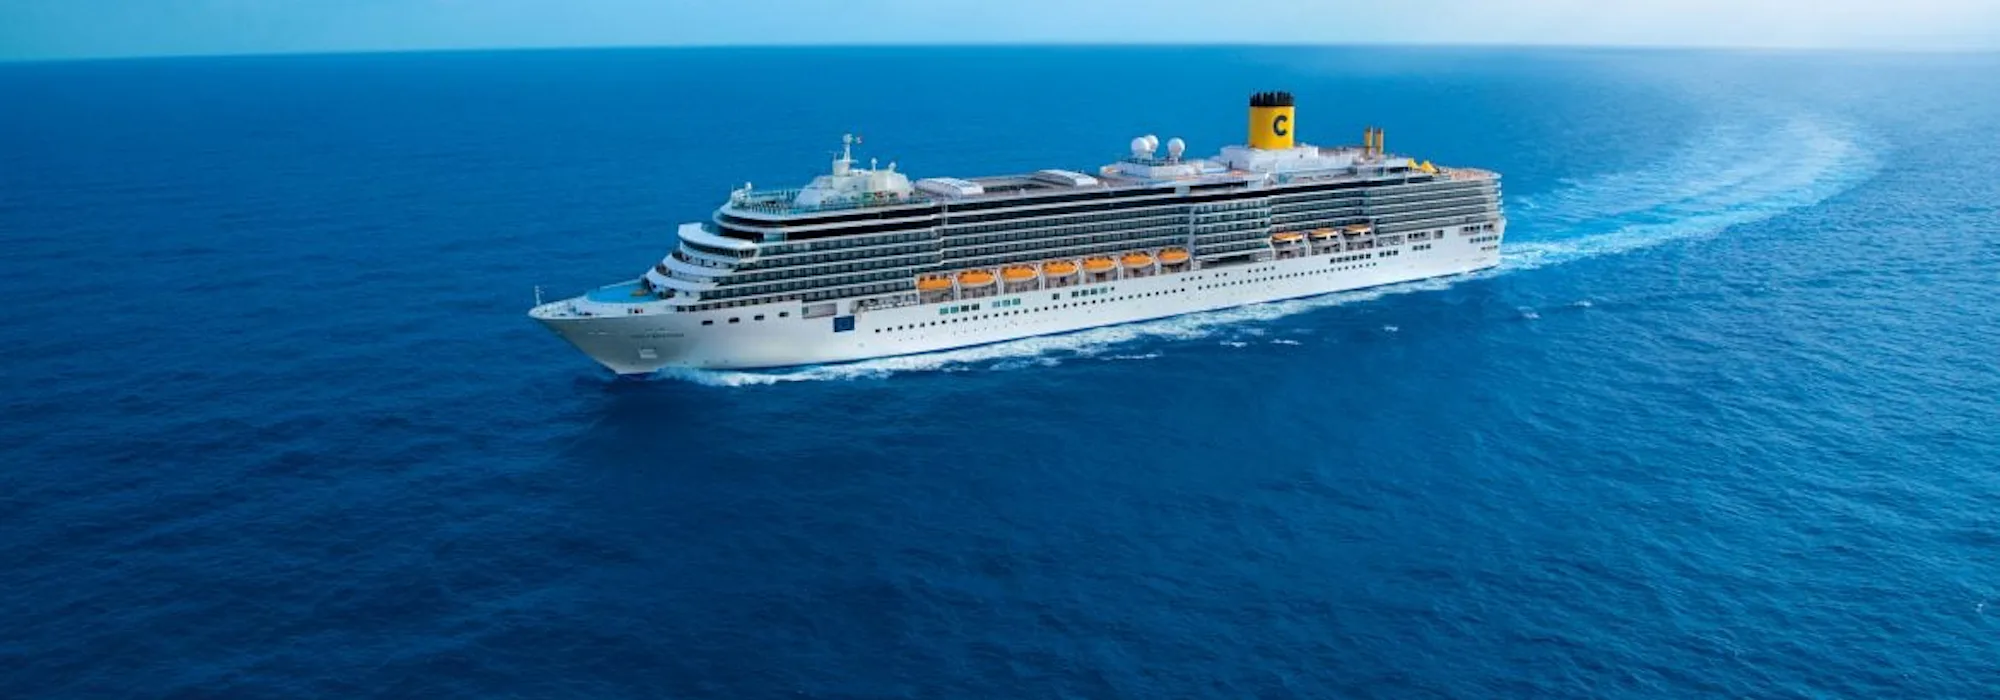 Costa Deliziosa - Costa Cruises